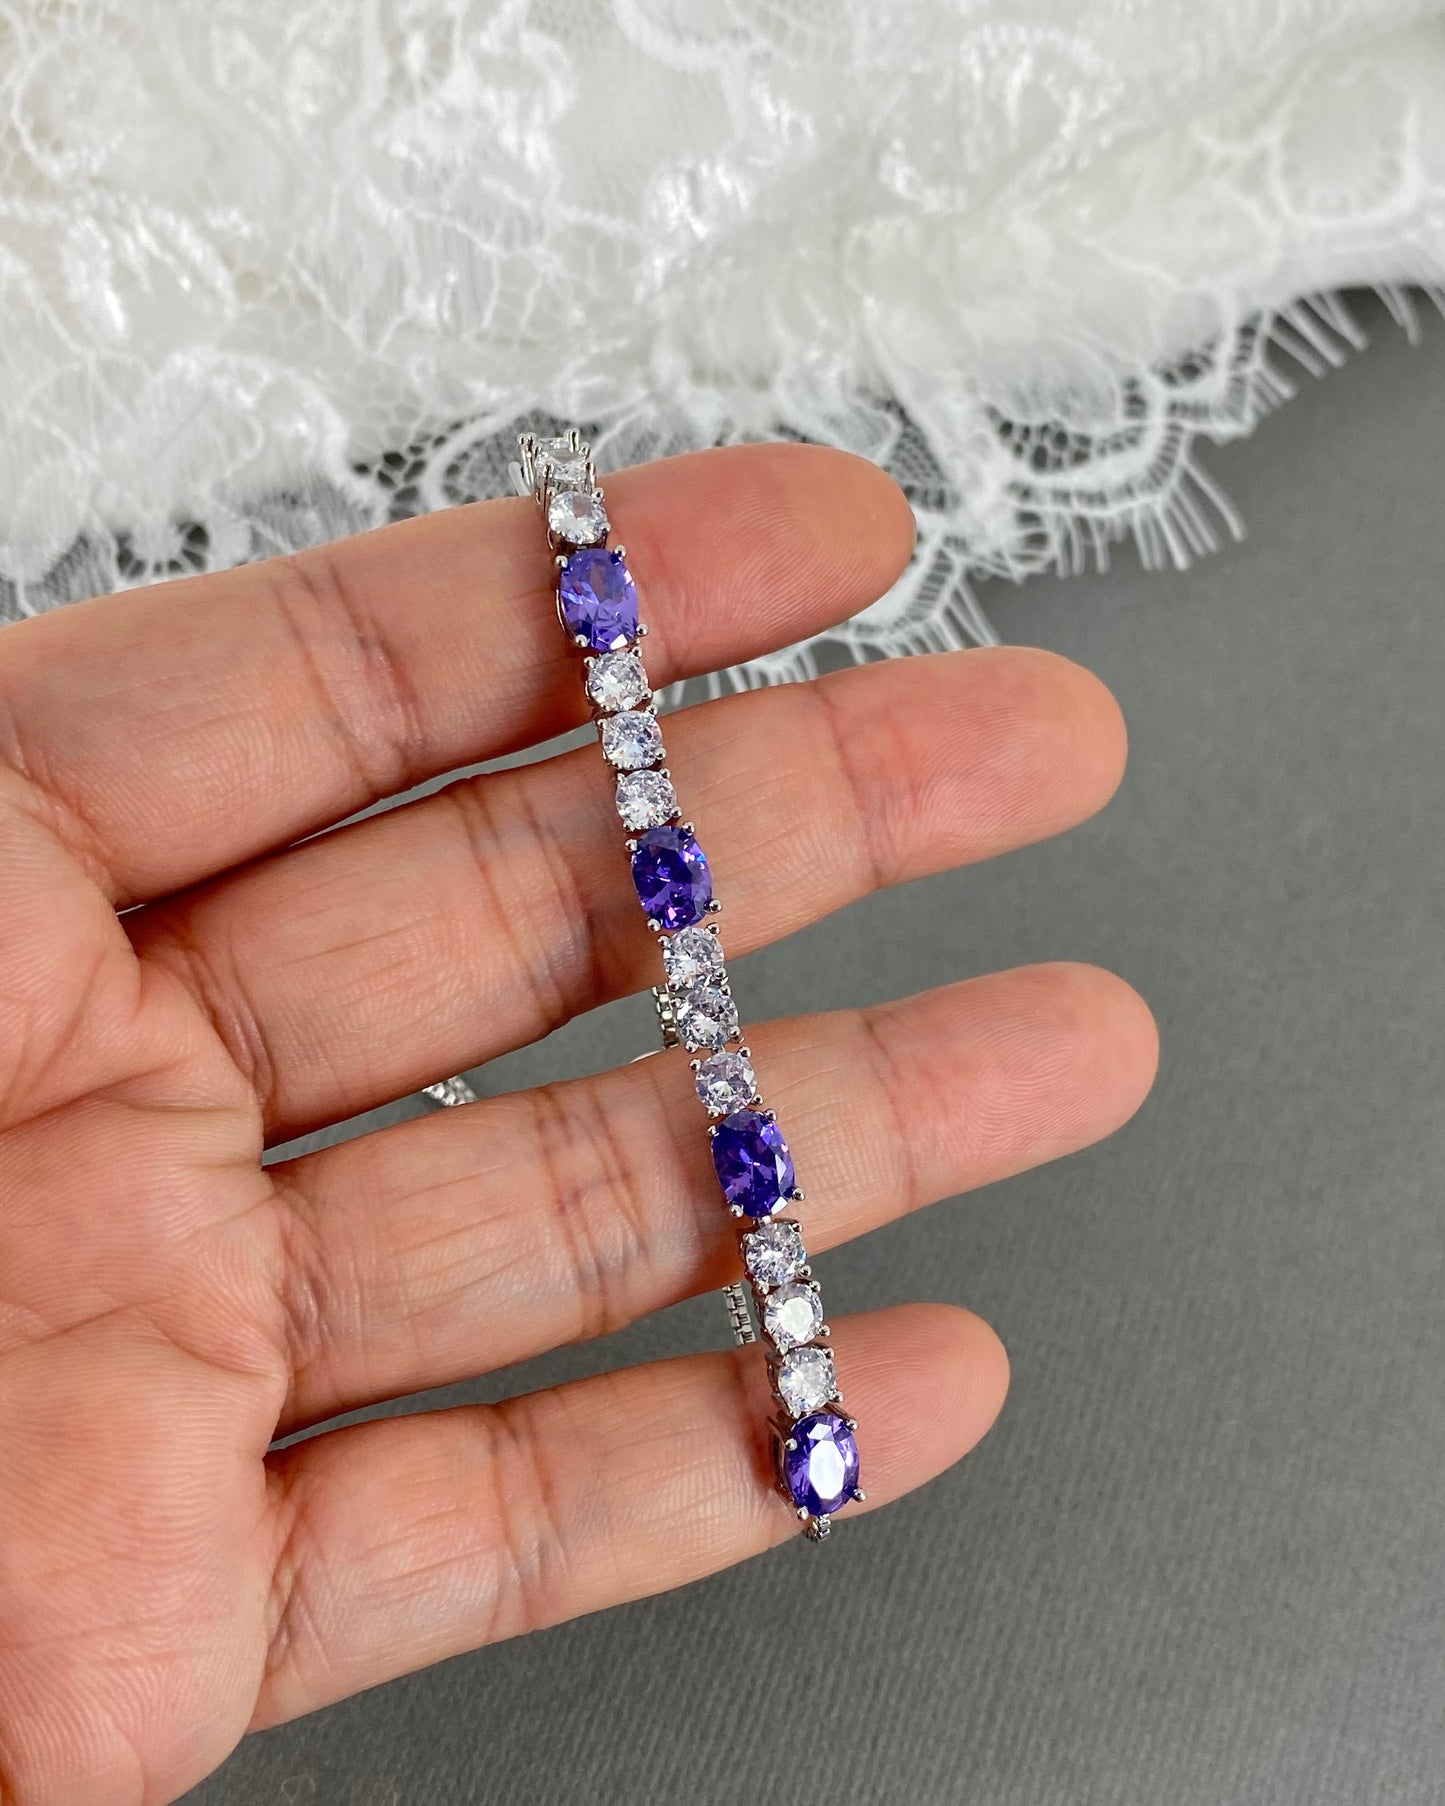 Heidi CZ Amethyst Purple Adjustable Bracelet